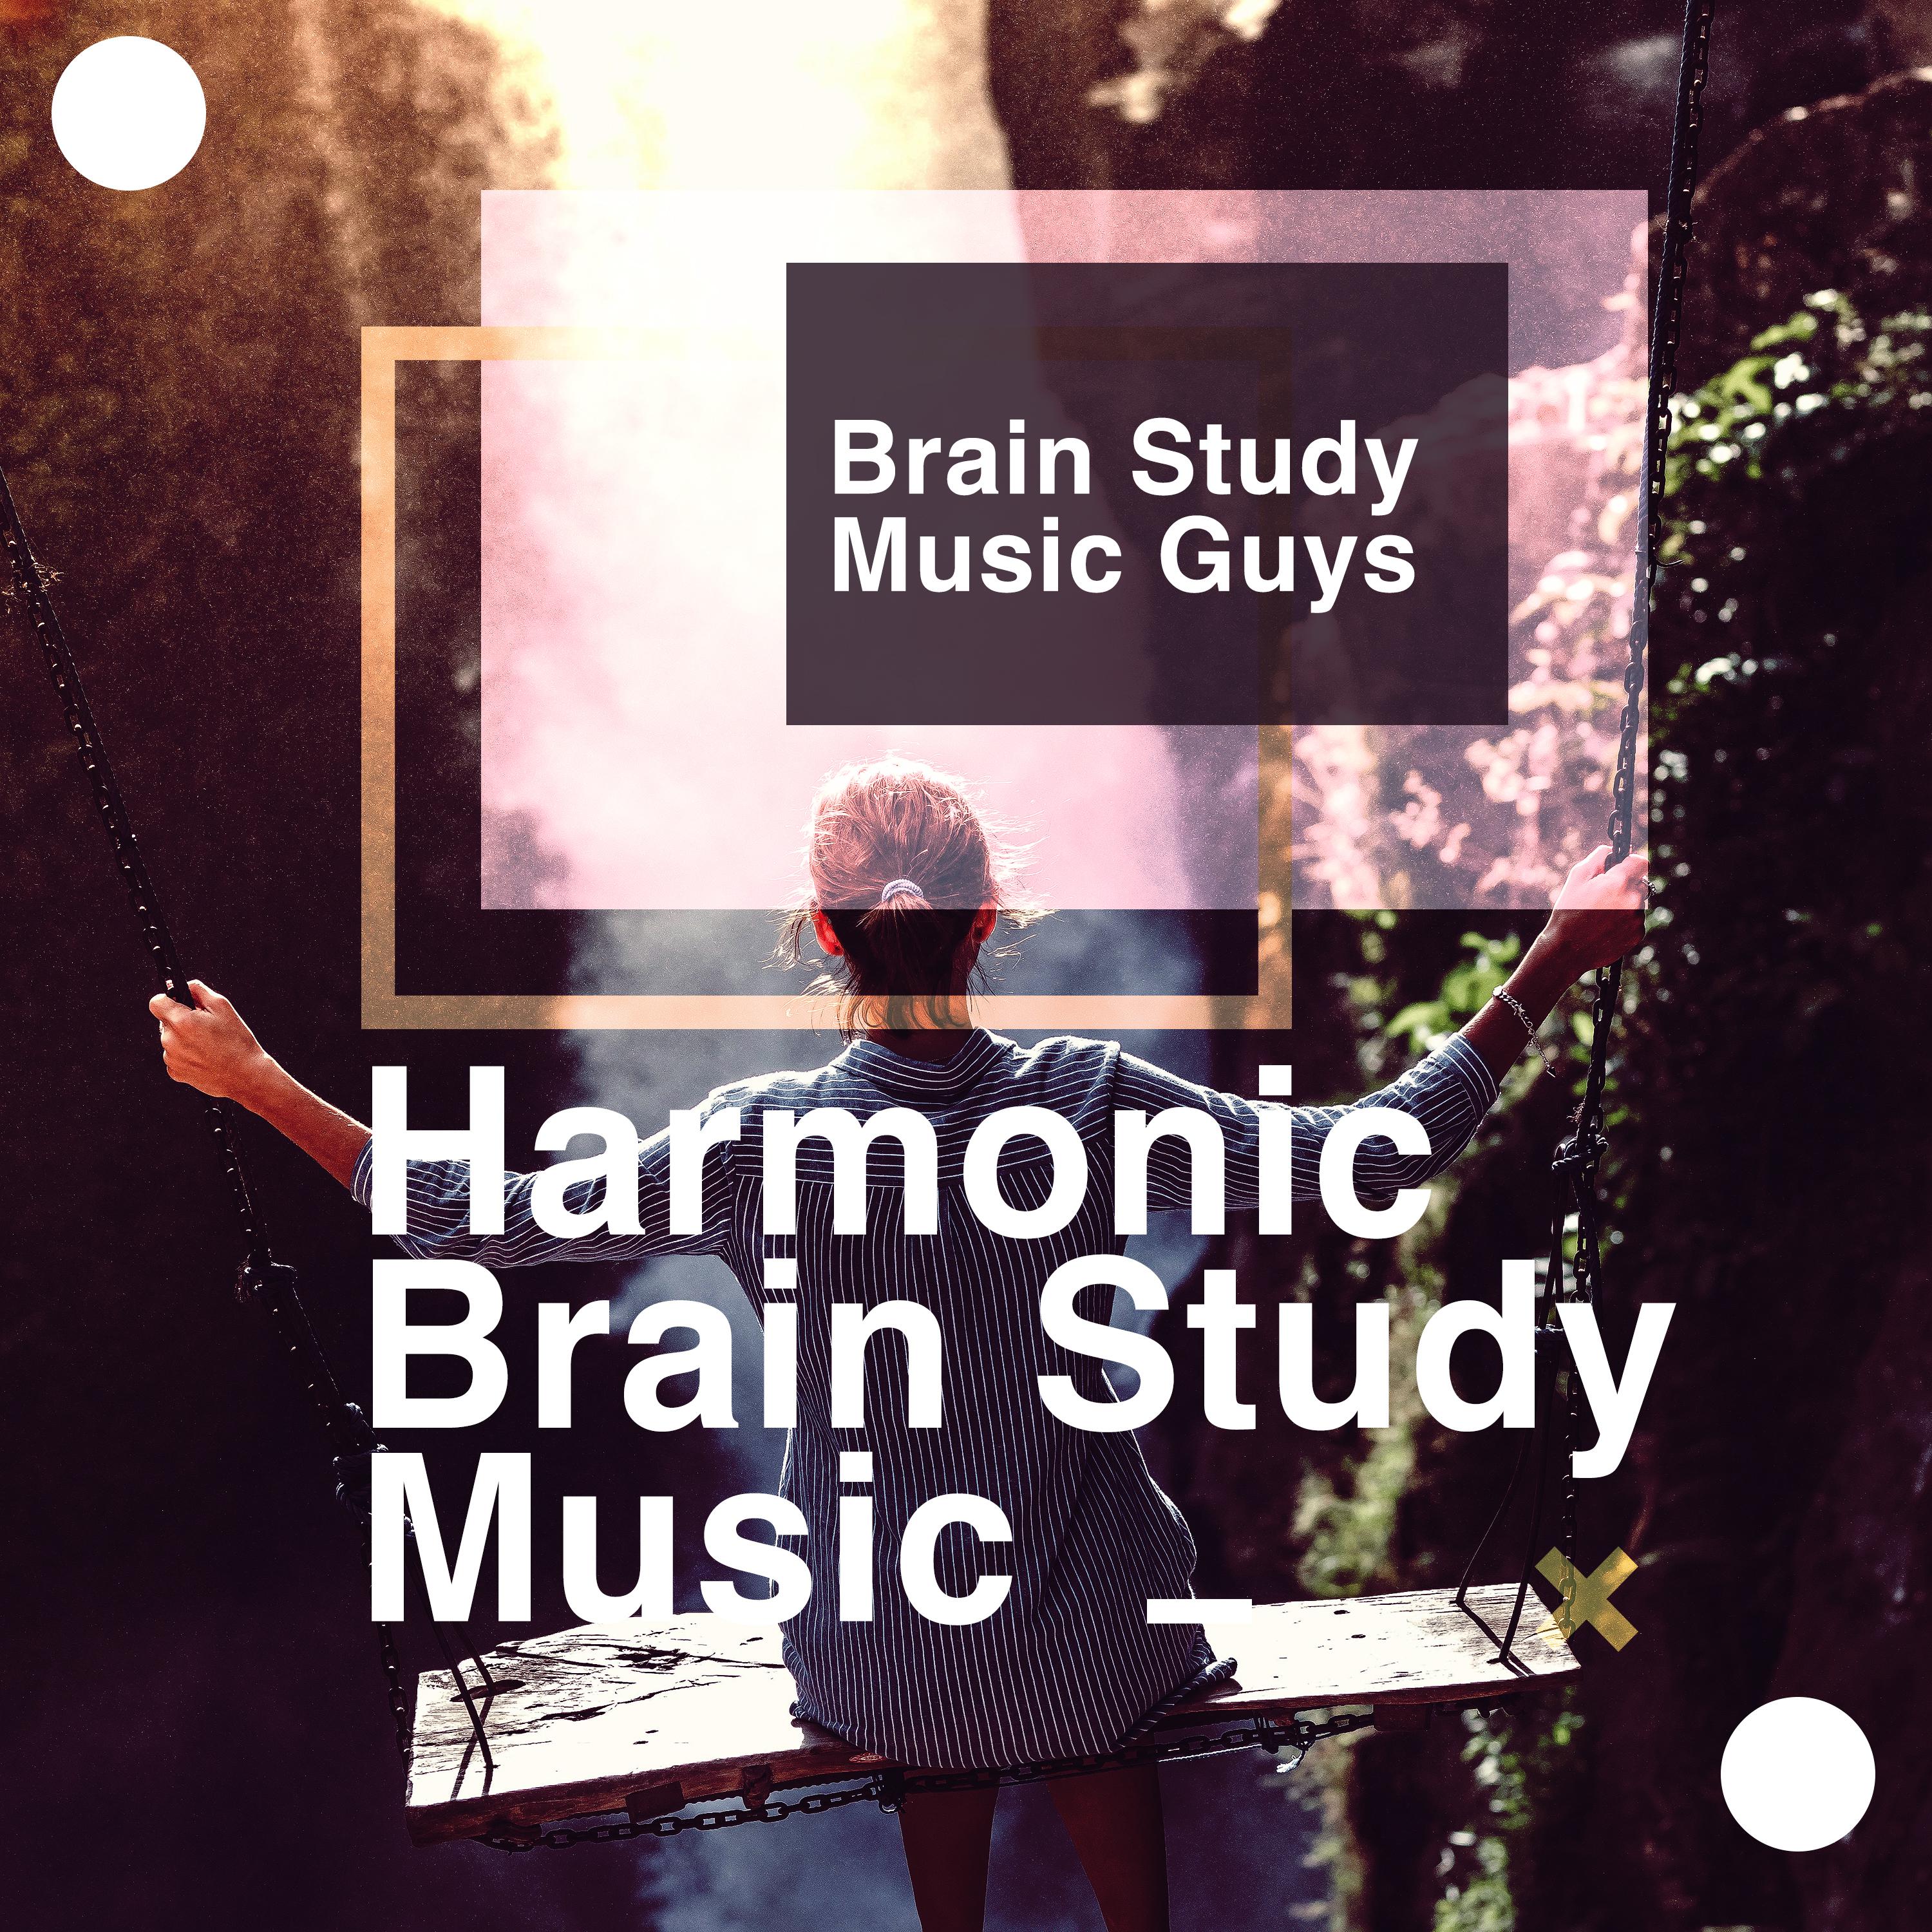 Harmonic Brain Study Music